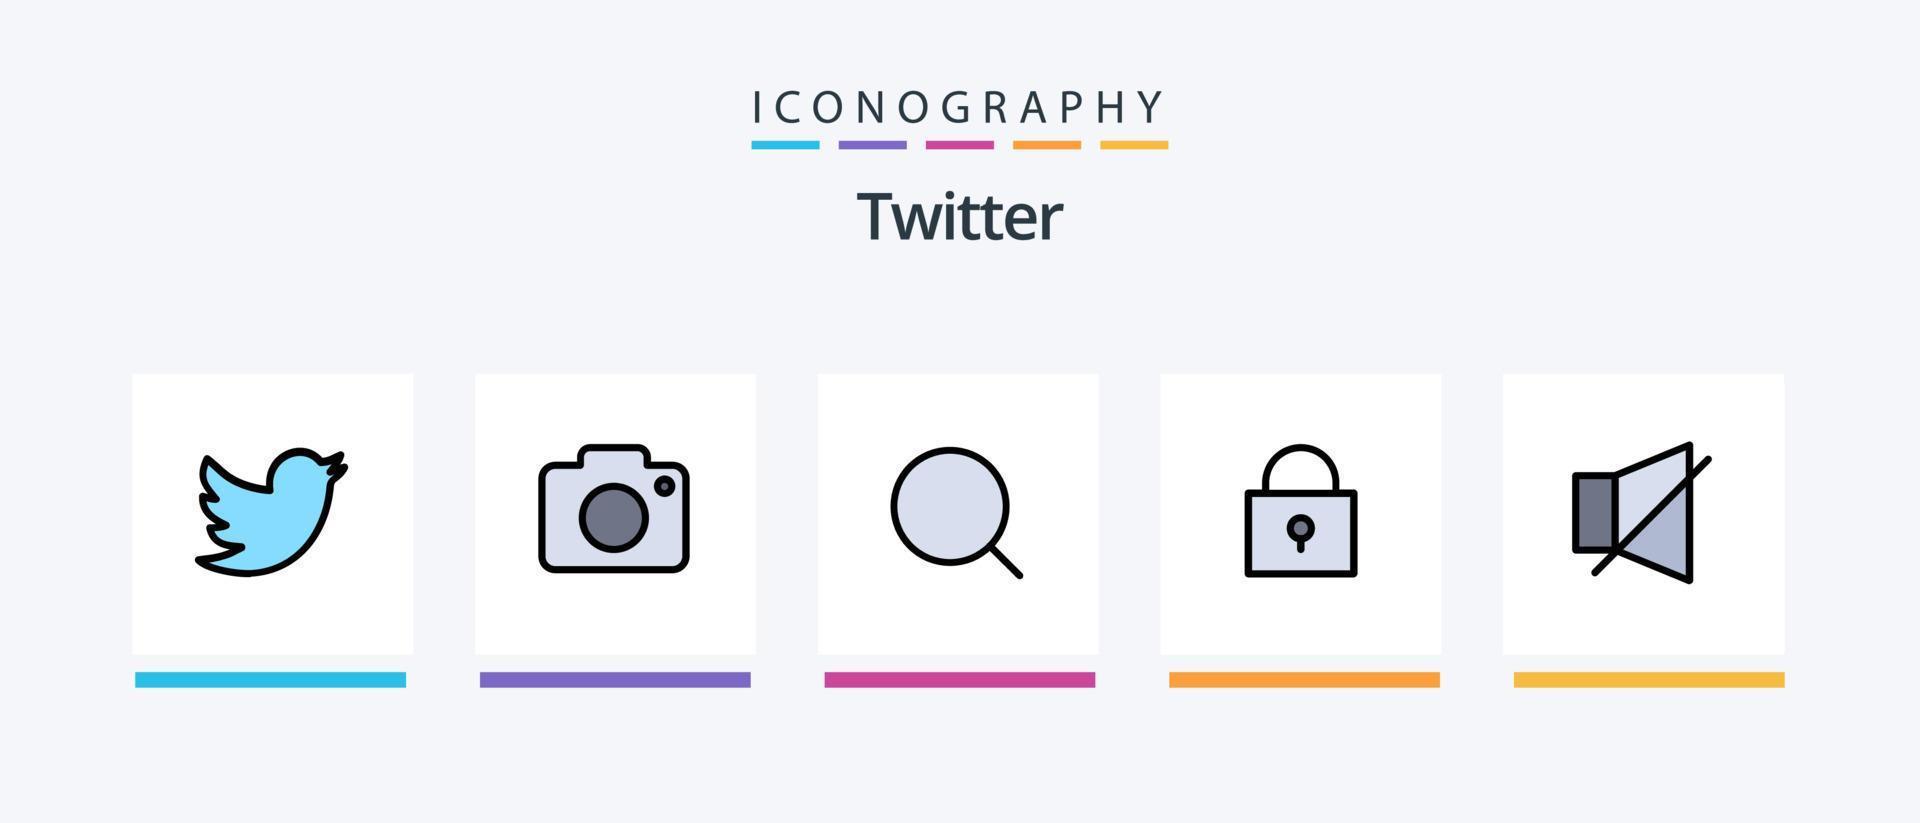 La línea de Twitter llenó el paquete de 5 iconos, incluido Twitter. hashtag. localización. seguir. como. diseño de iconos creativos vector